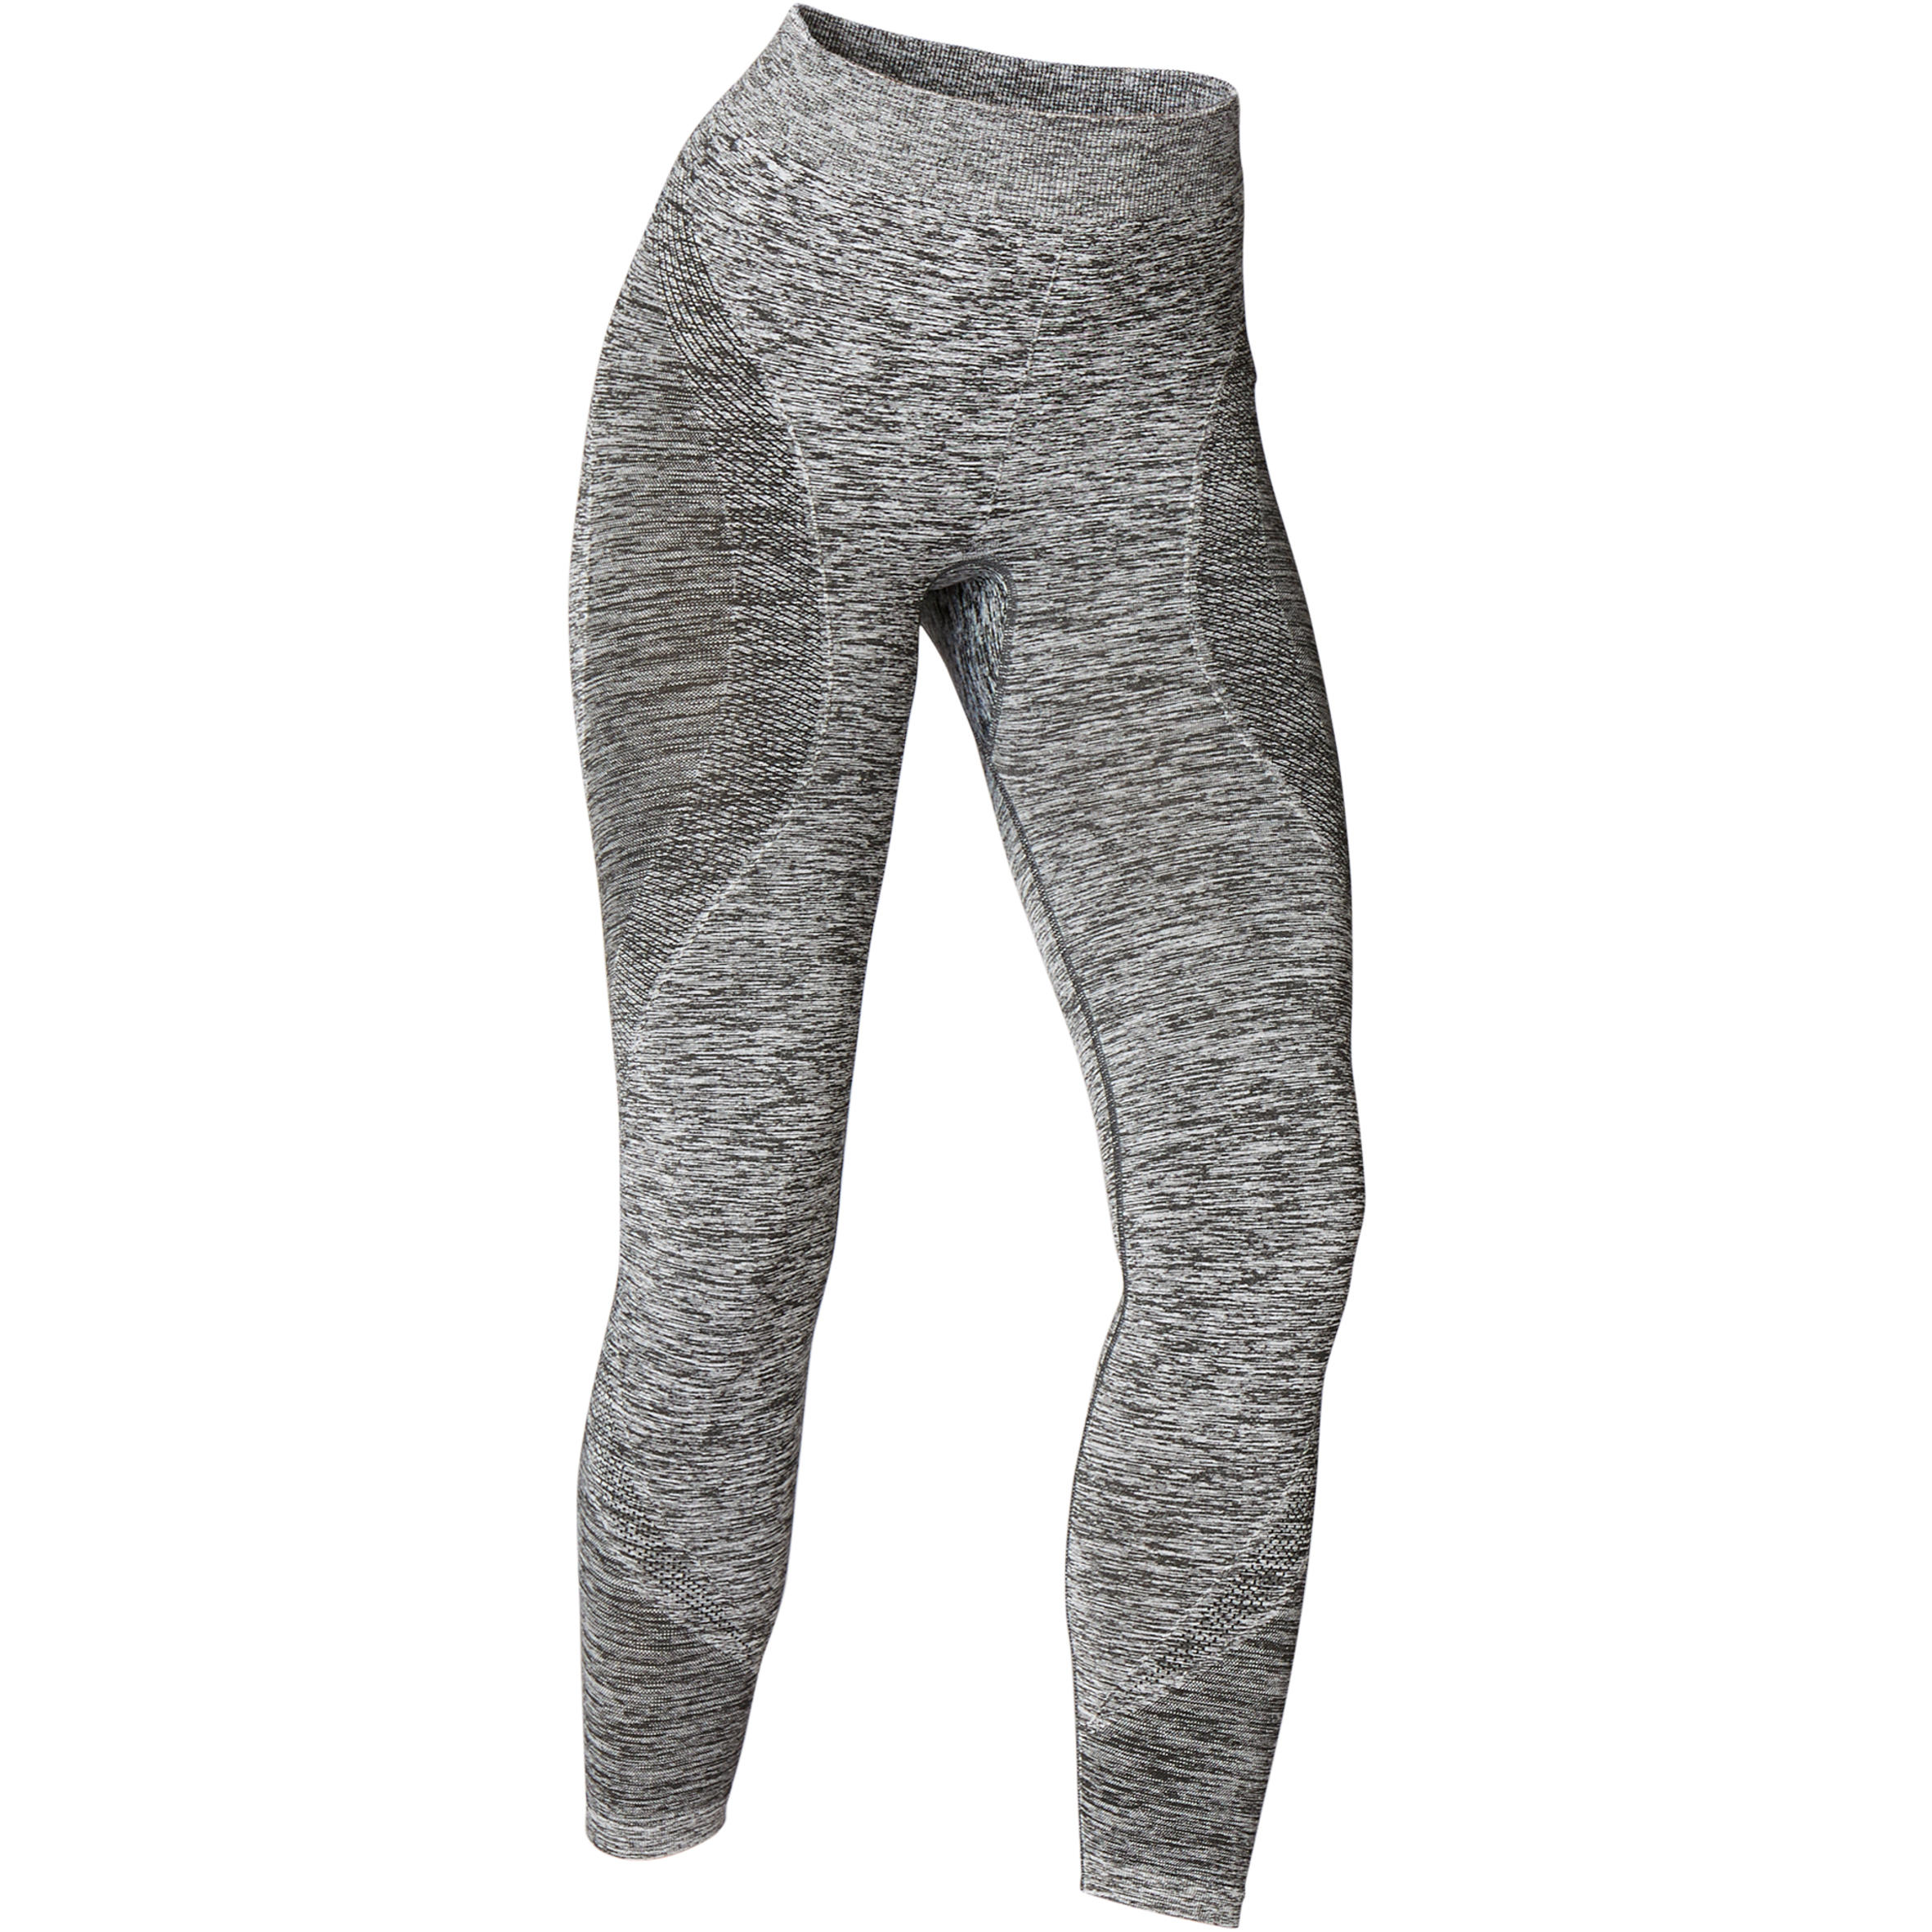 Seamless 7/8 Dynamic Yoga Leggings - Mottled Grey - StoresRadar